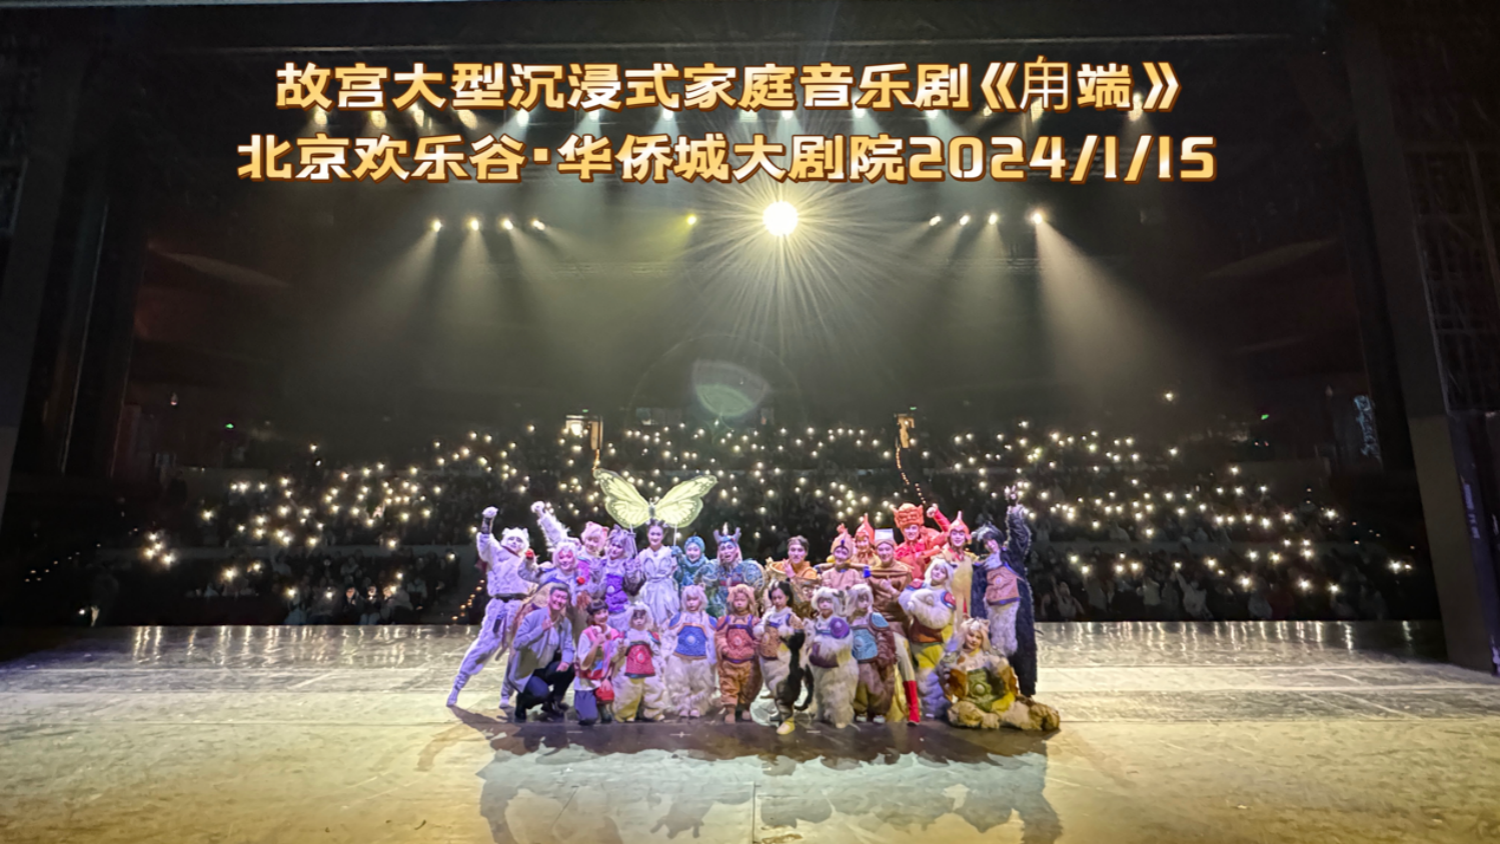 有片 | 故宮音樂劇《甪端》駐演版在北京歡樂谷公益首演 5月將登陸香港